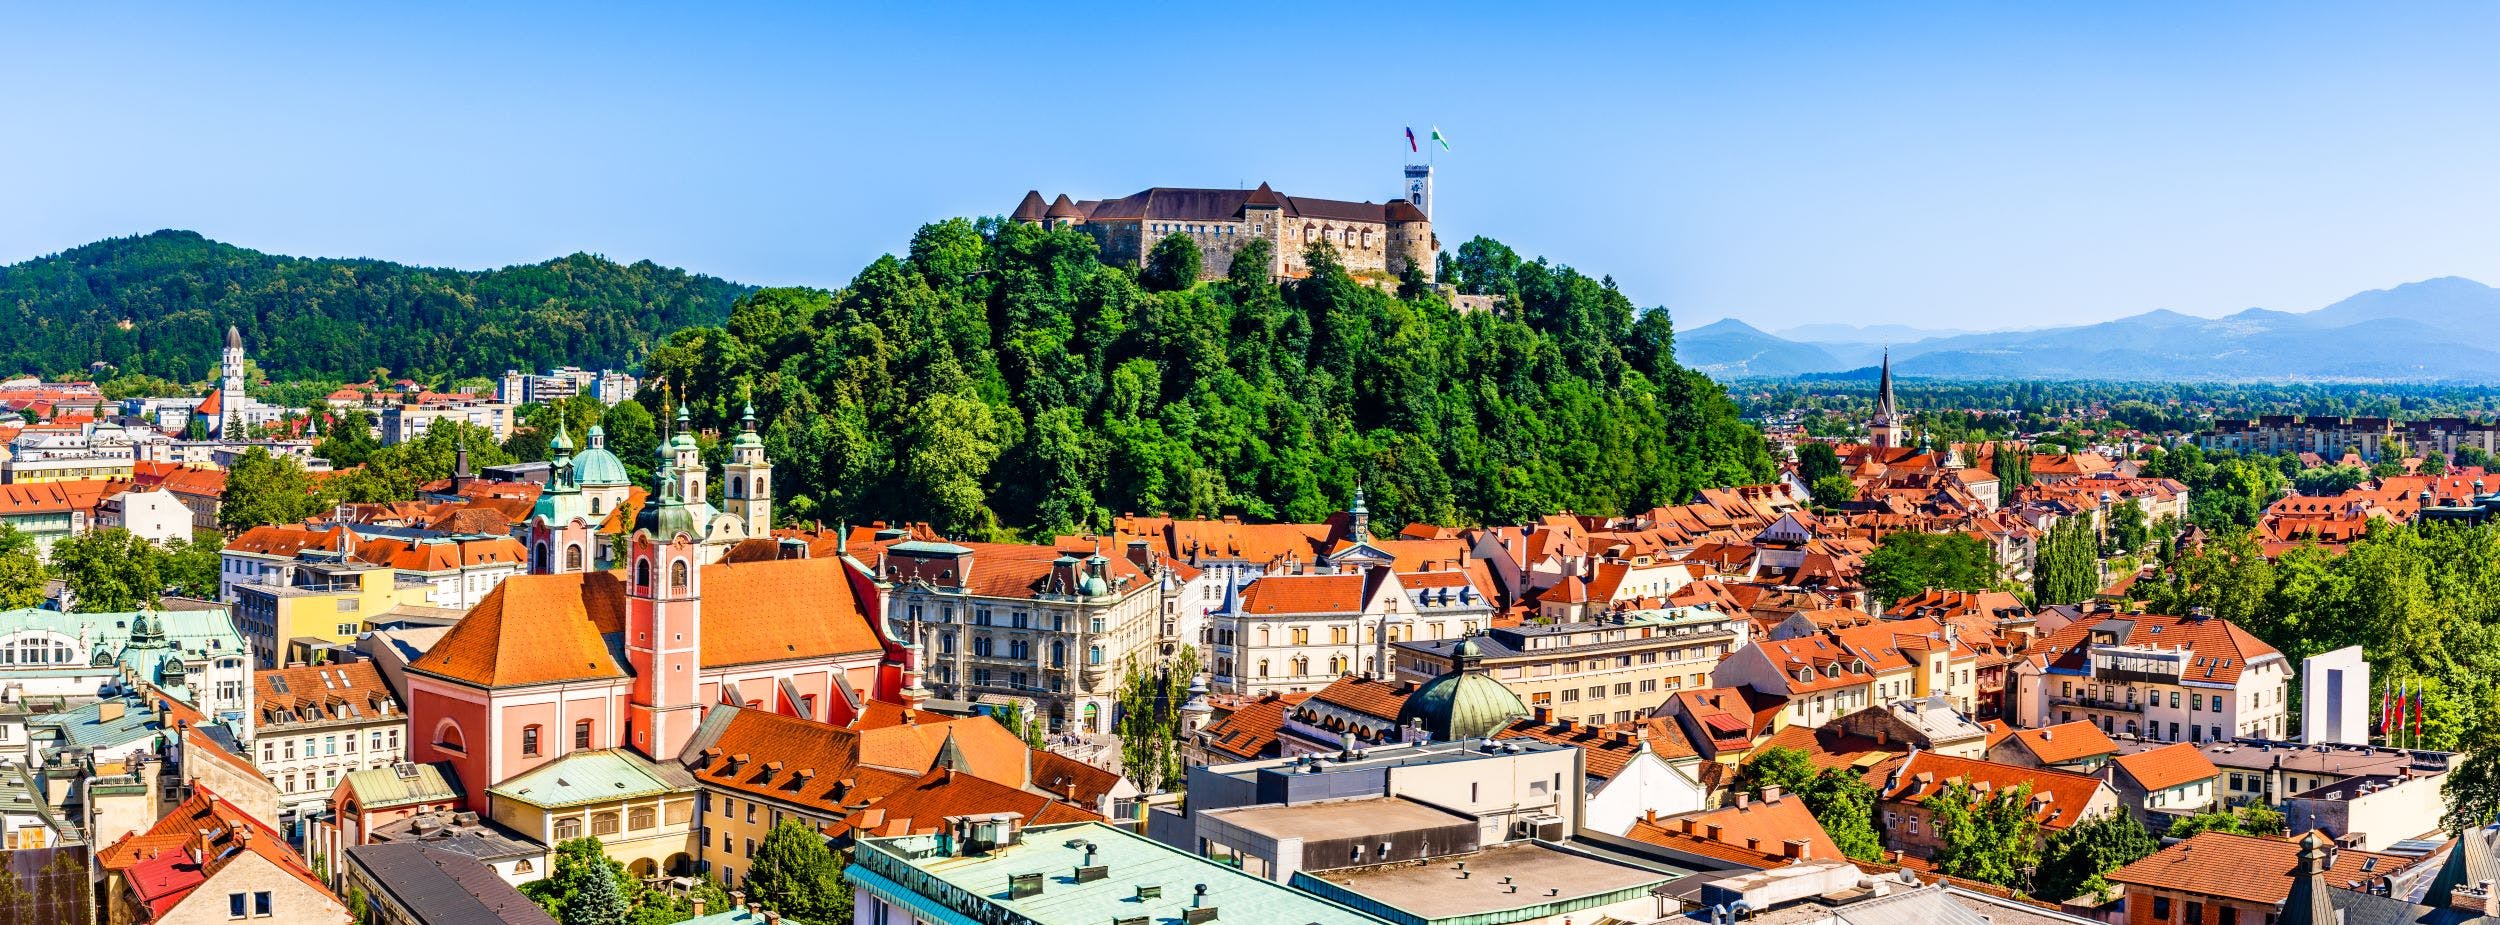 Ljubljana city tour and castle Musement